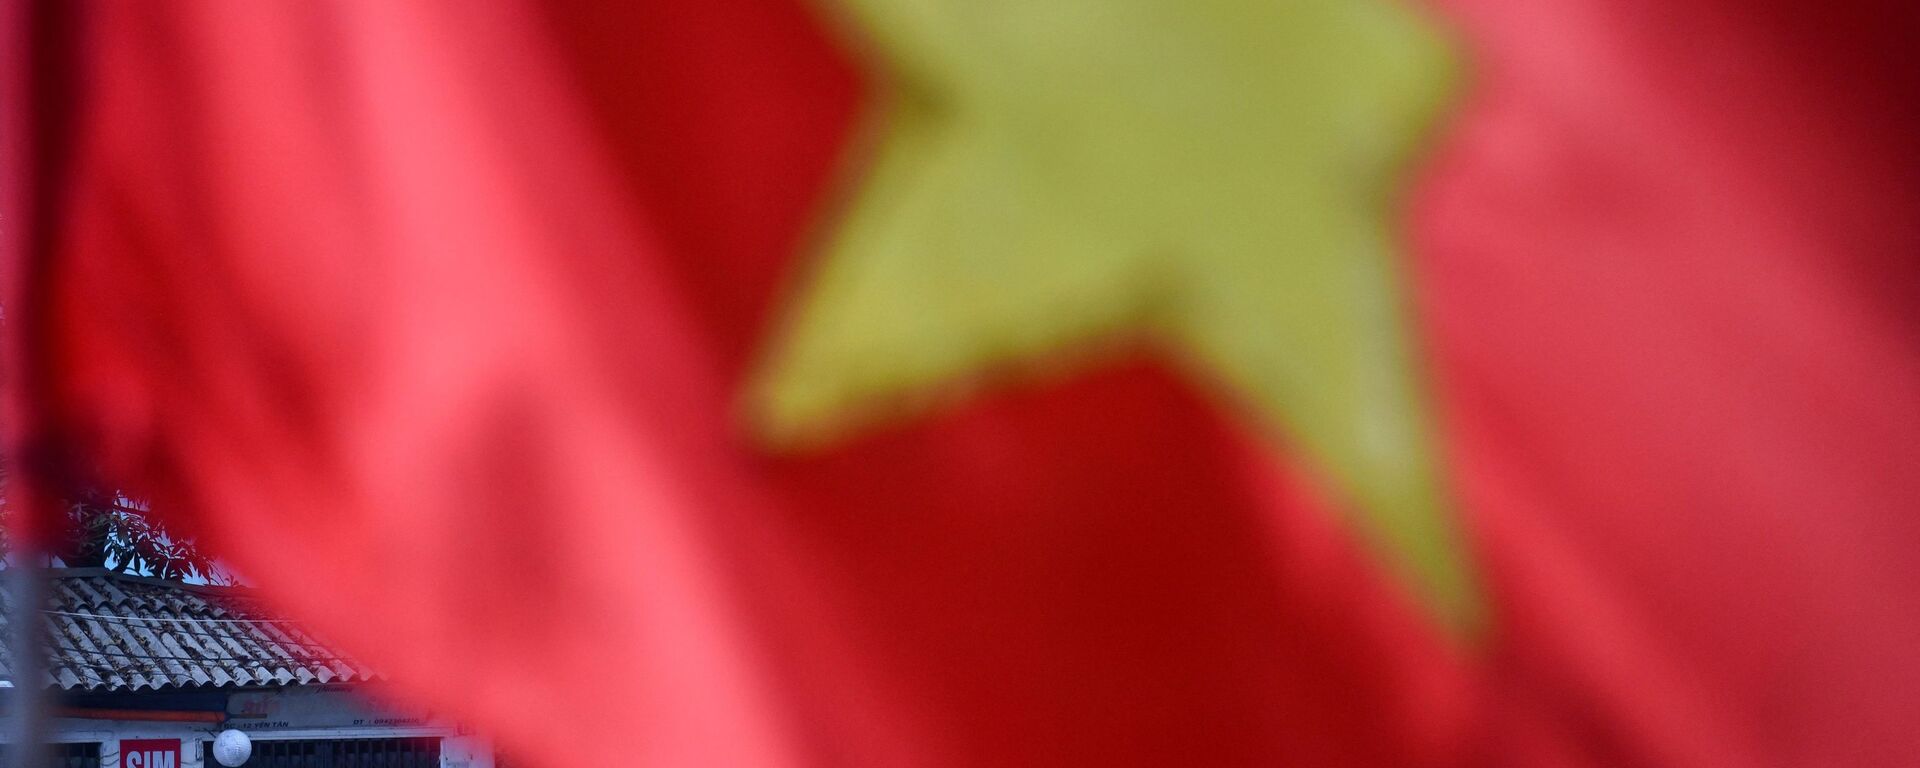 Cột cờ Việt Nam, Hà Nội. - Sputnik Việt Nam, 1920, 14.09.2021